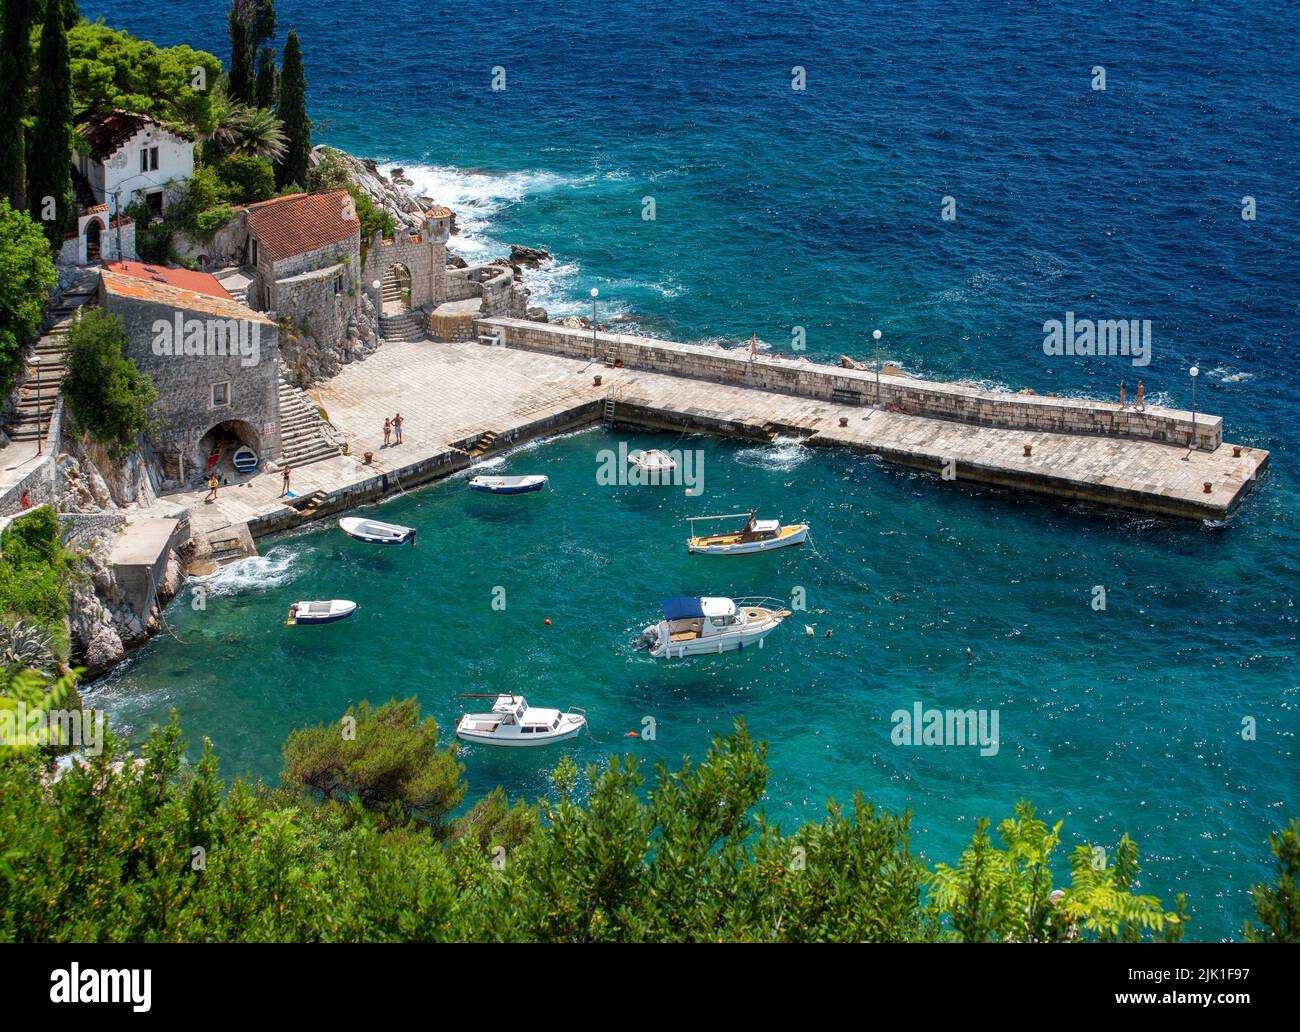 Vista del puerto de Trsteno desde el arboreto (Trsteno Arboretum, Dalmacia, Dubrovnik-Condado de Neretva, Croacia). Foto de stock